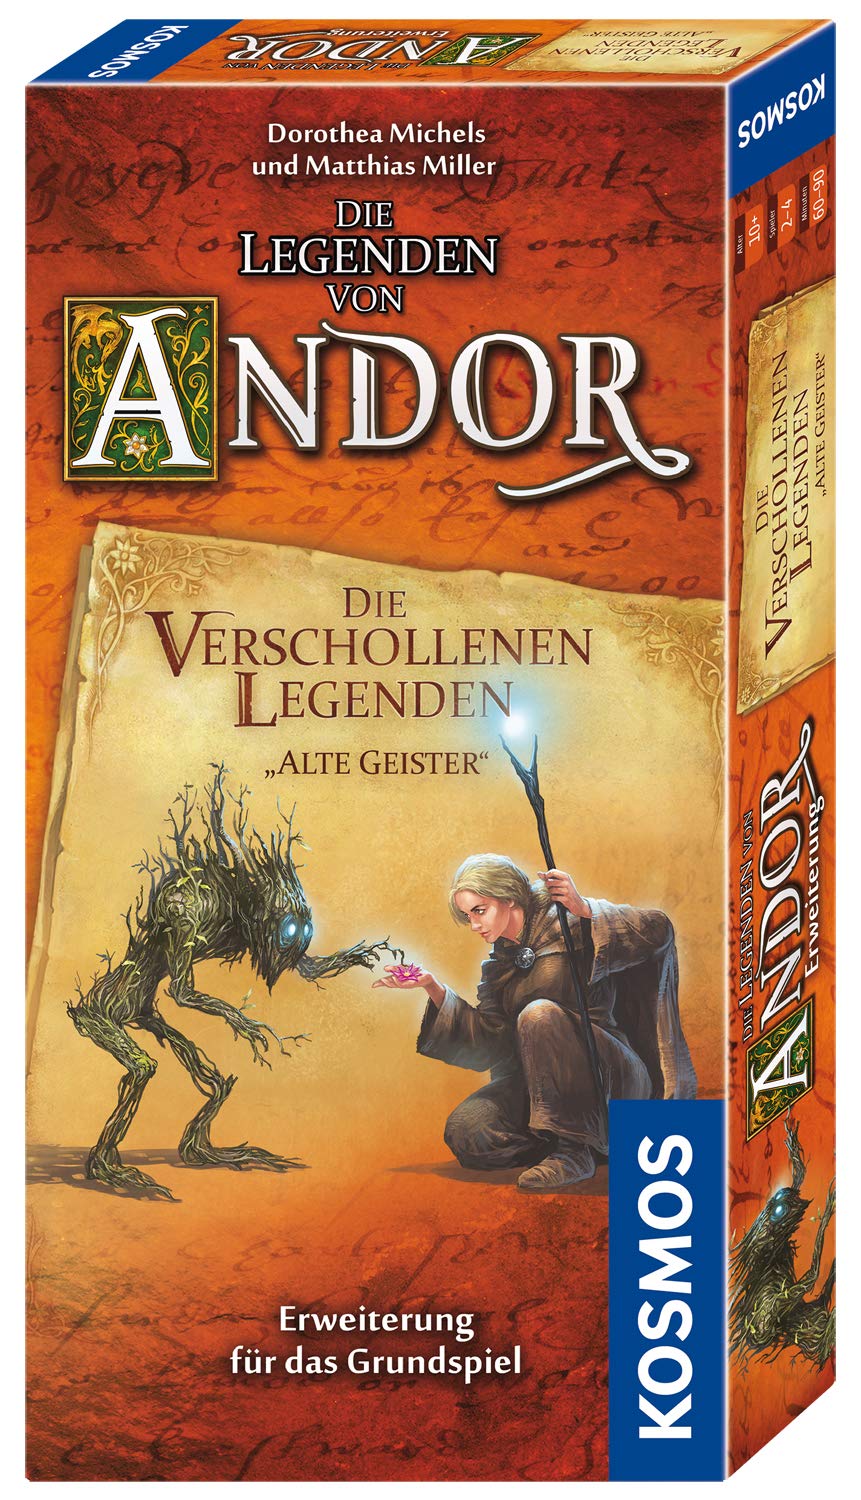 Die Legenden von Andor - Die verschollenen Legenden (Erweiterung